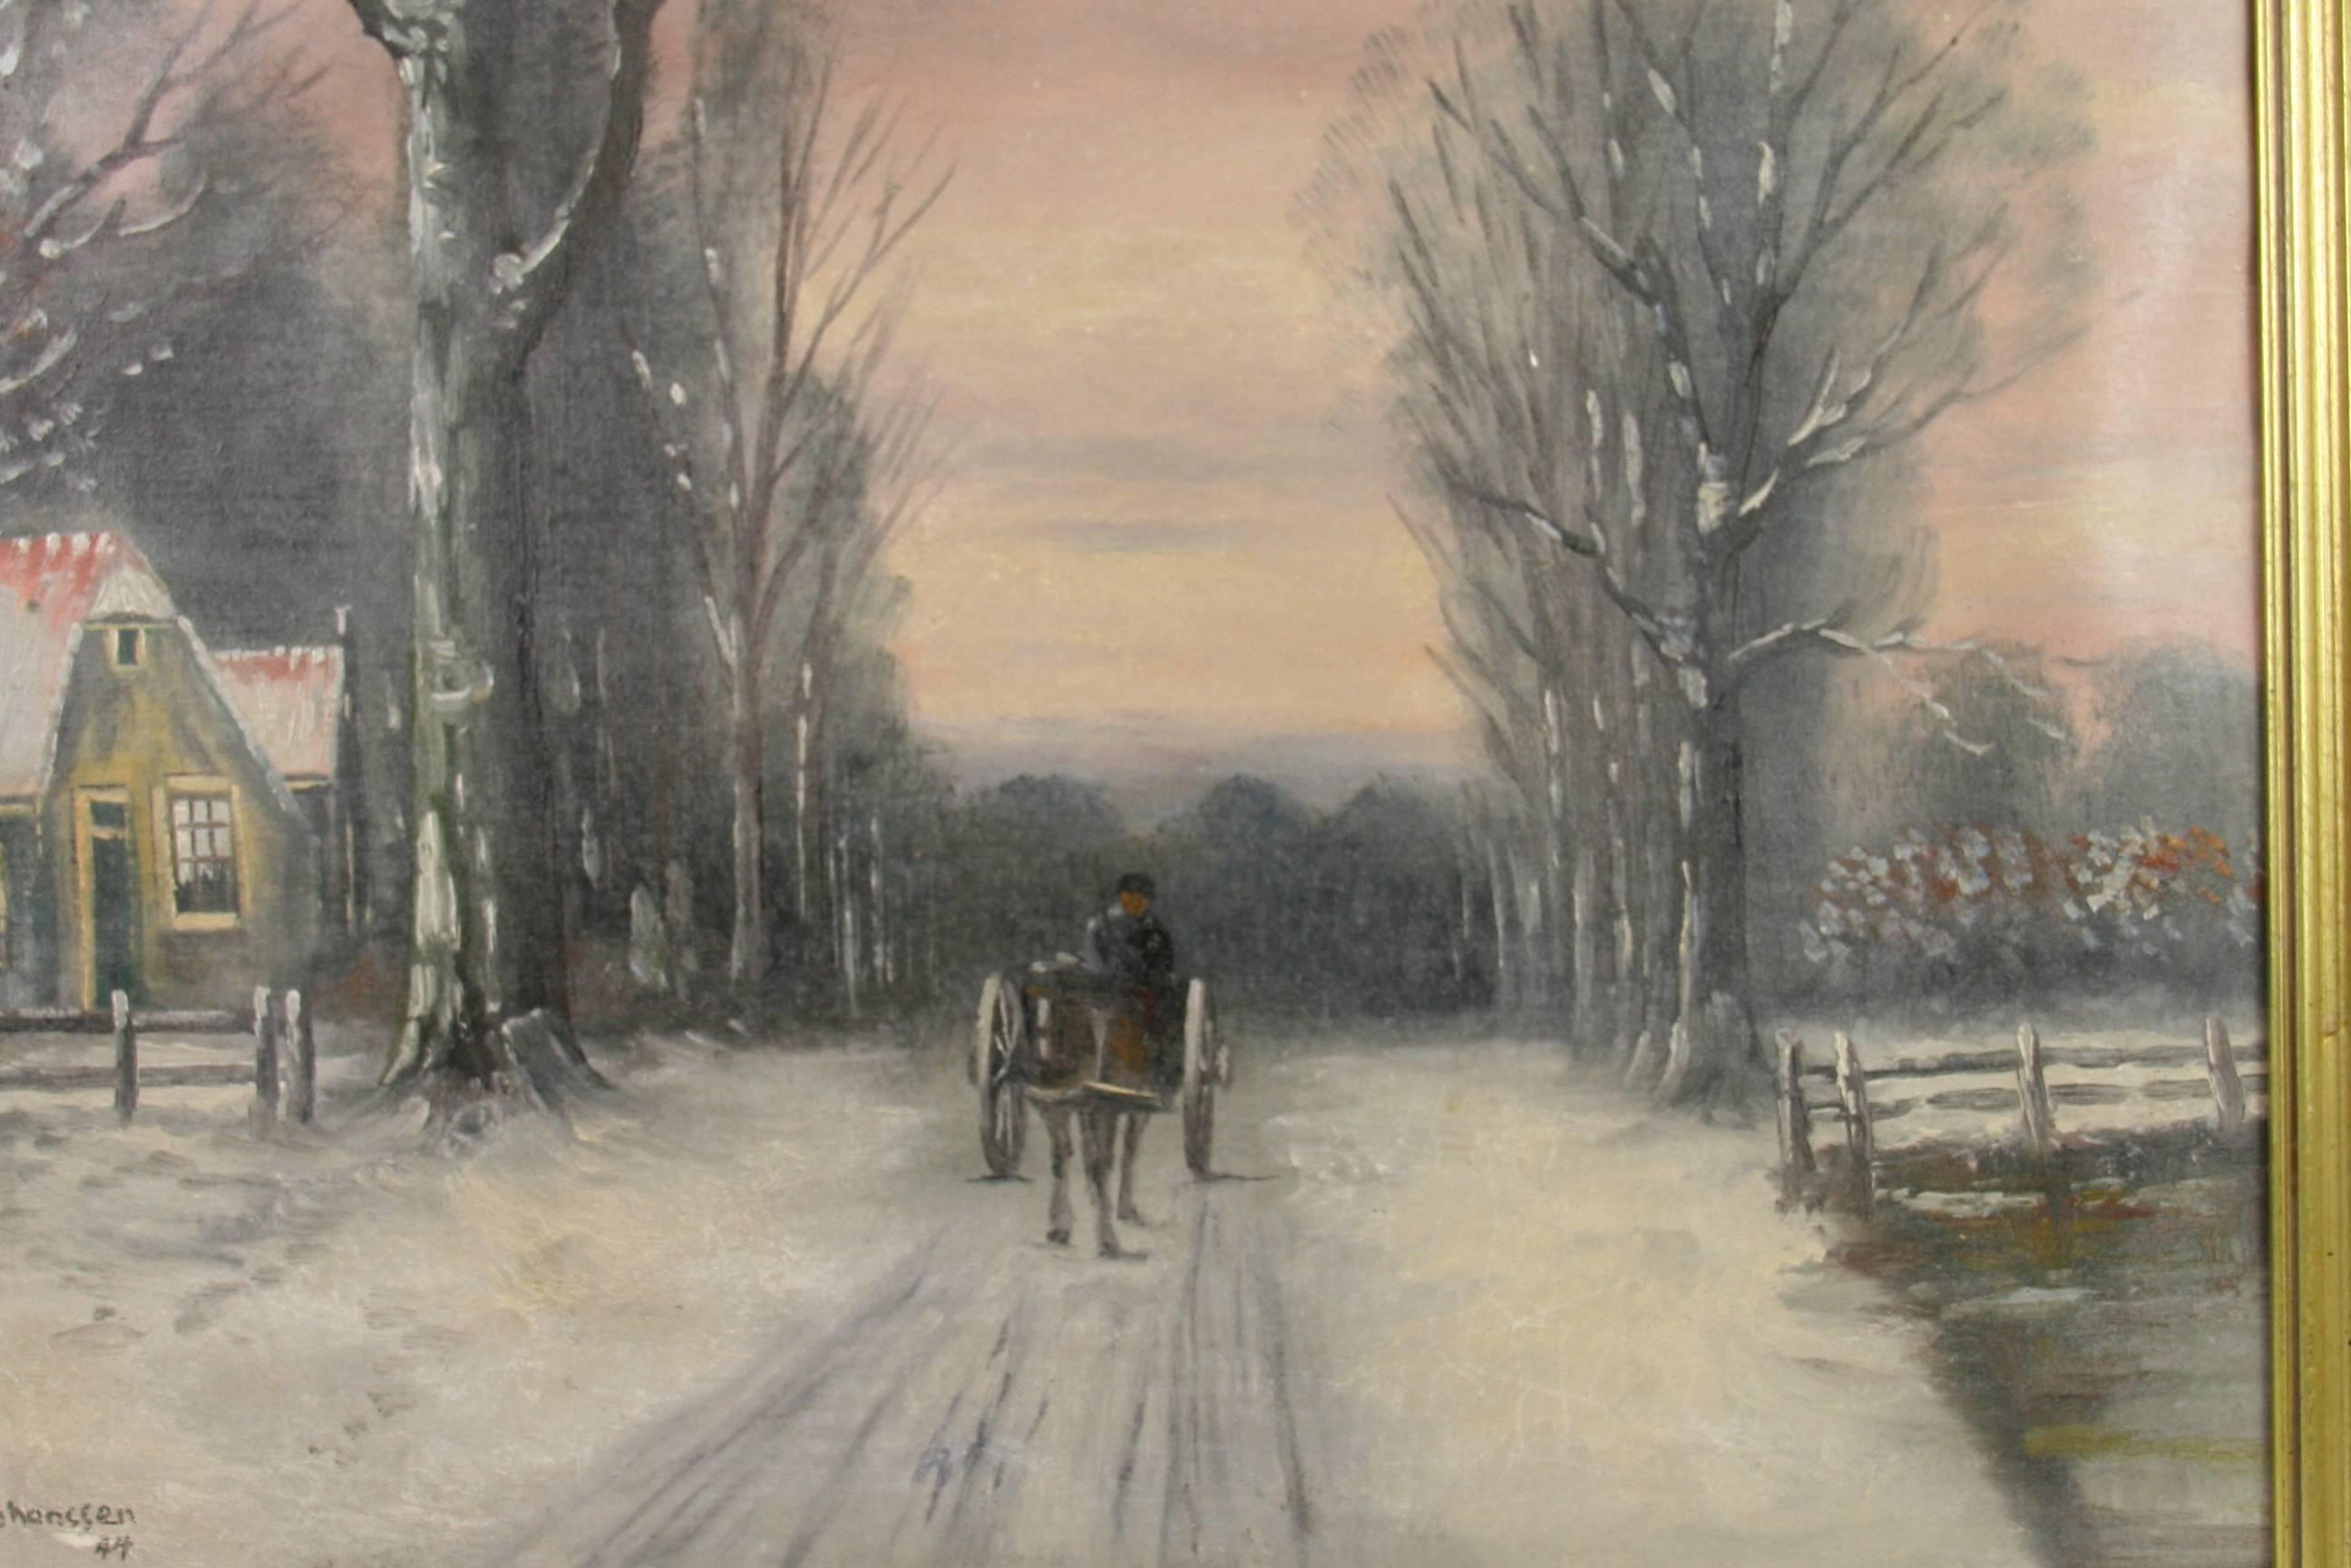 Antike Pferde und Kutschen  Dänisch  Winterlandschaft, Ölgemälde  Gemälde um 1940 – Painting von Jahanssen